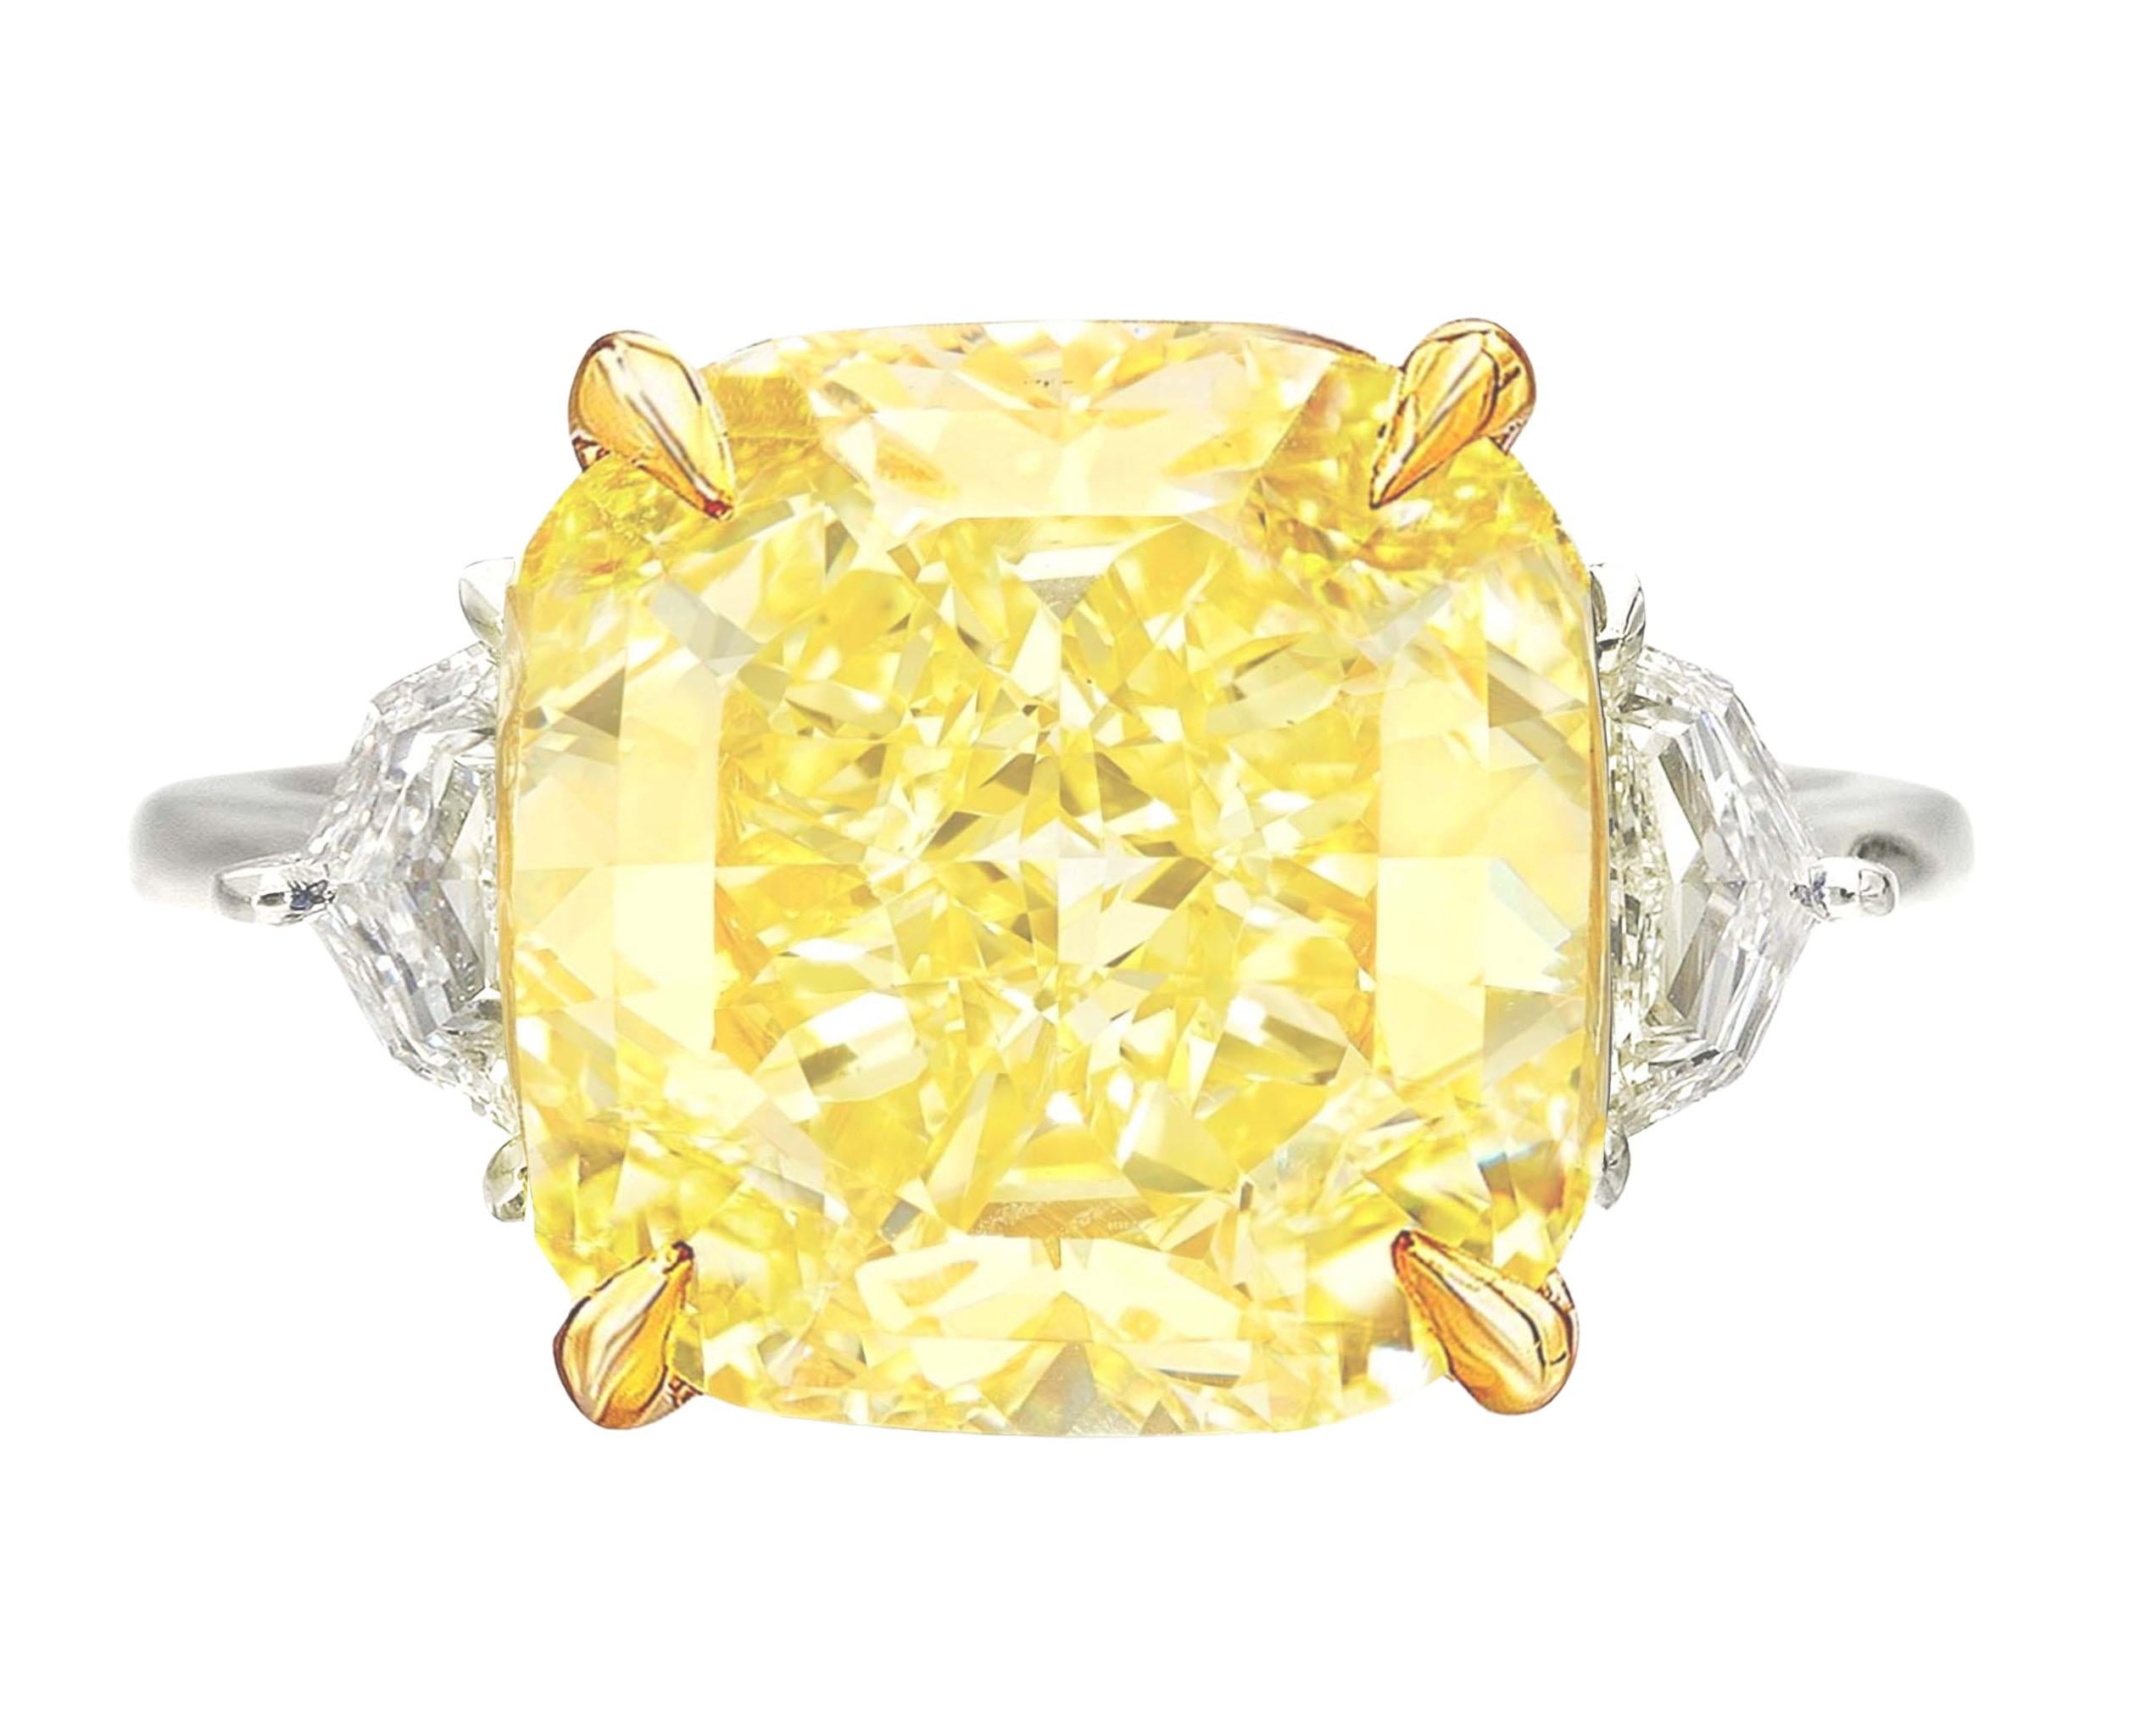 GIA Certified 10 Carat Fancy Yellow Cushion Cut Diamond Ring For Sale